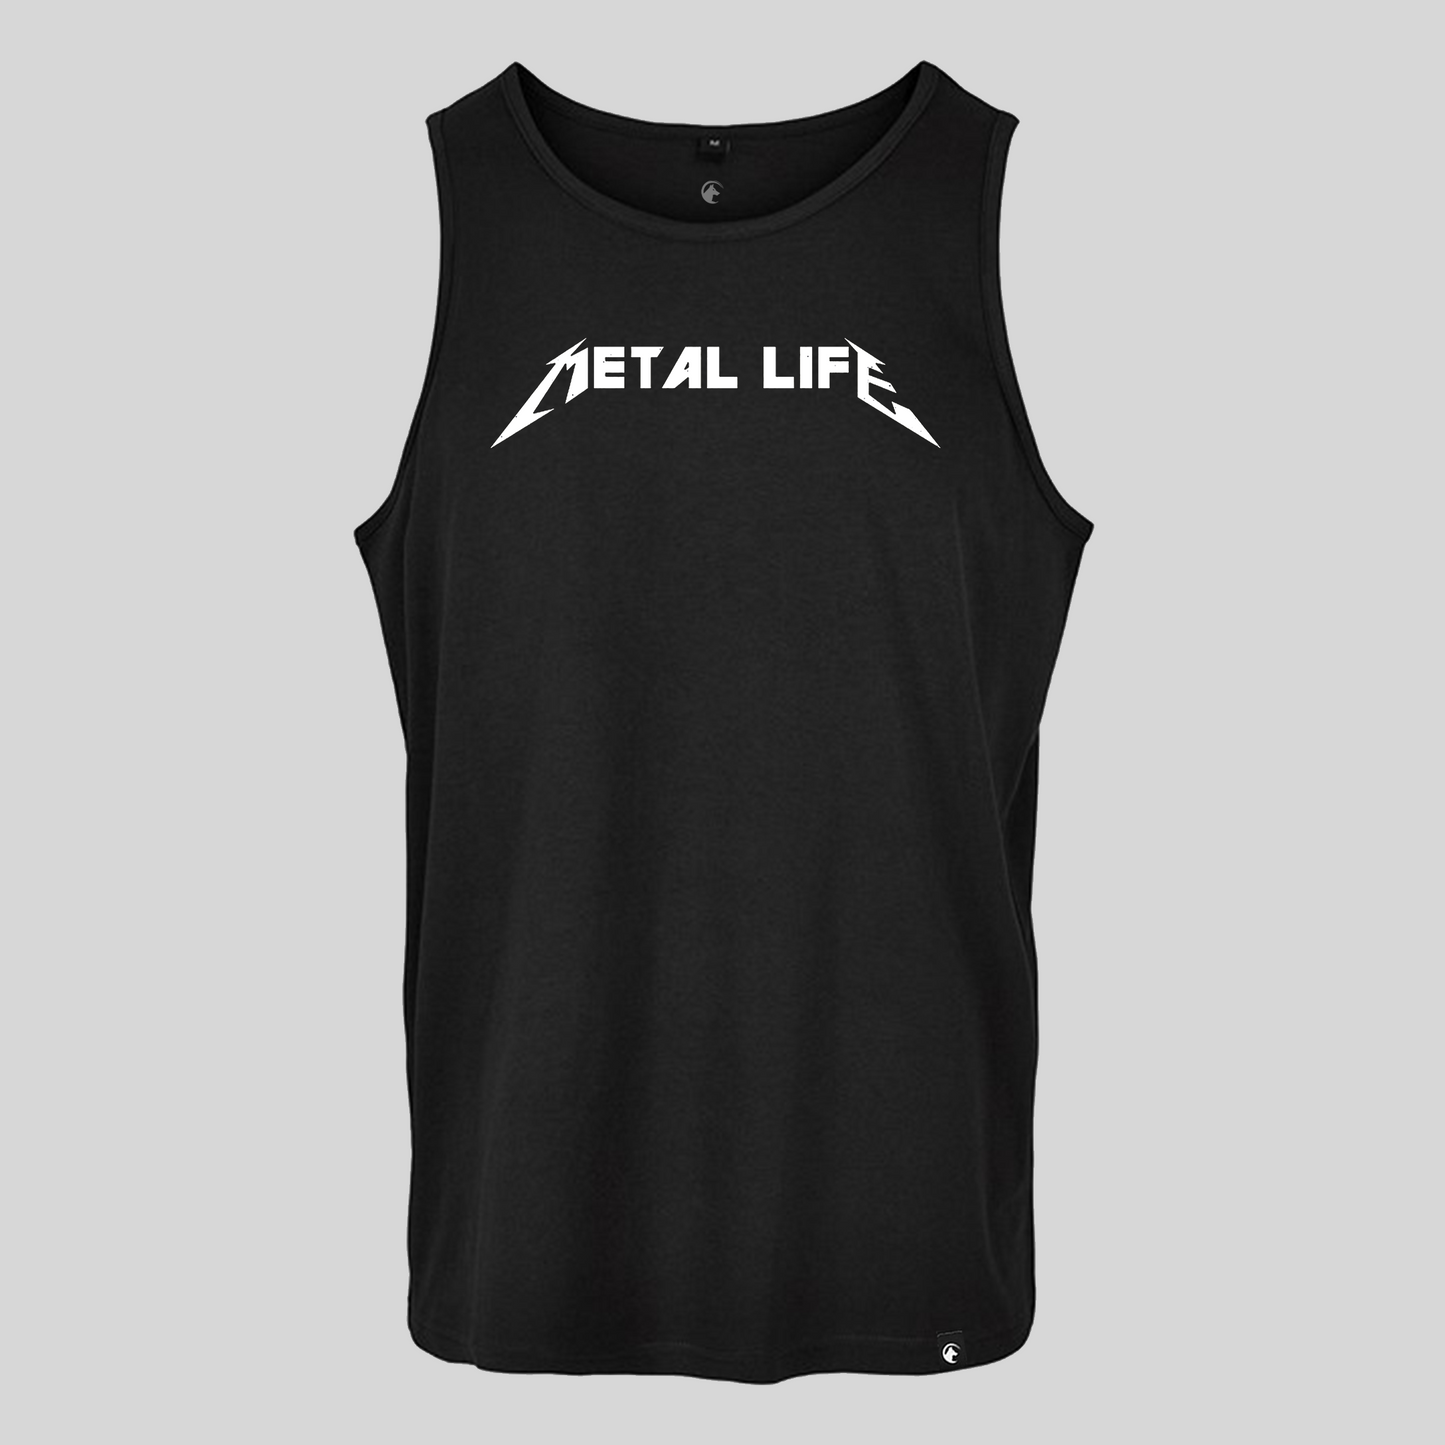 Metal life Vest